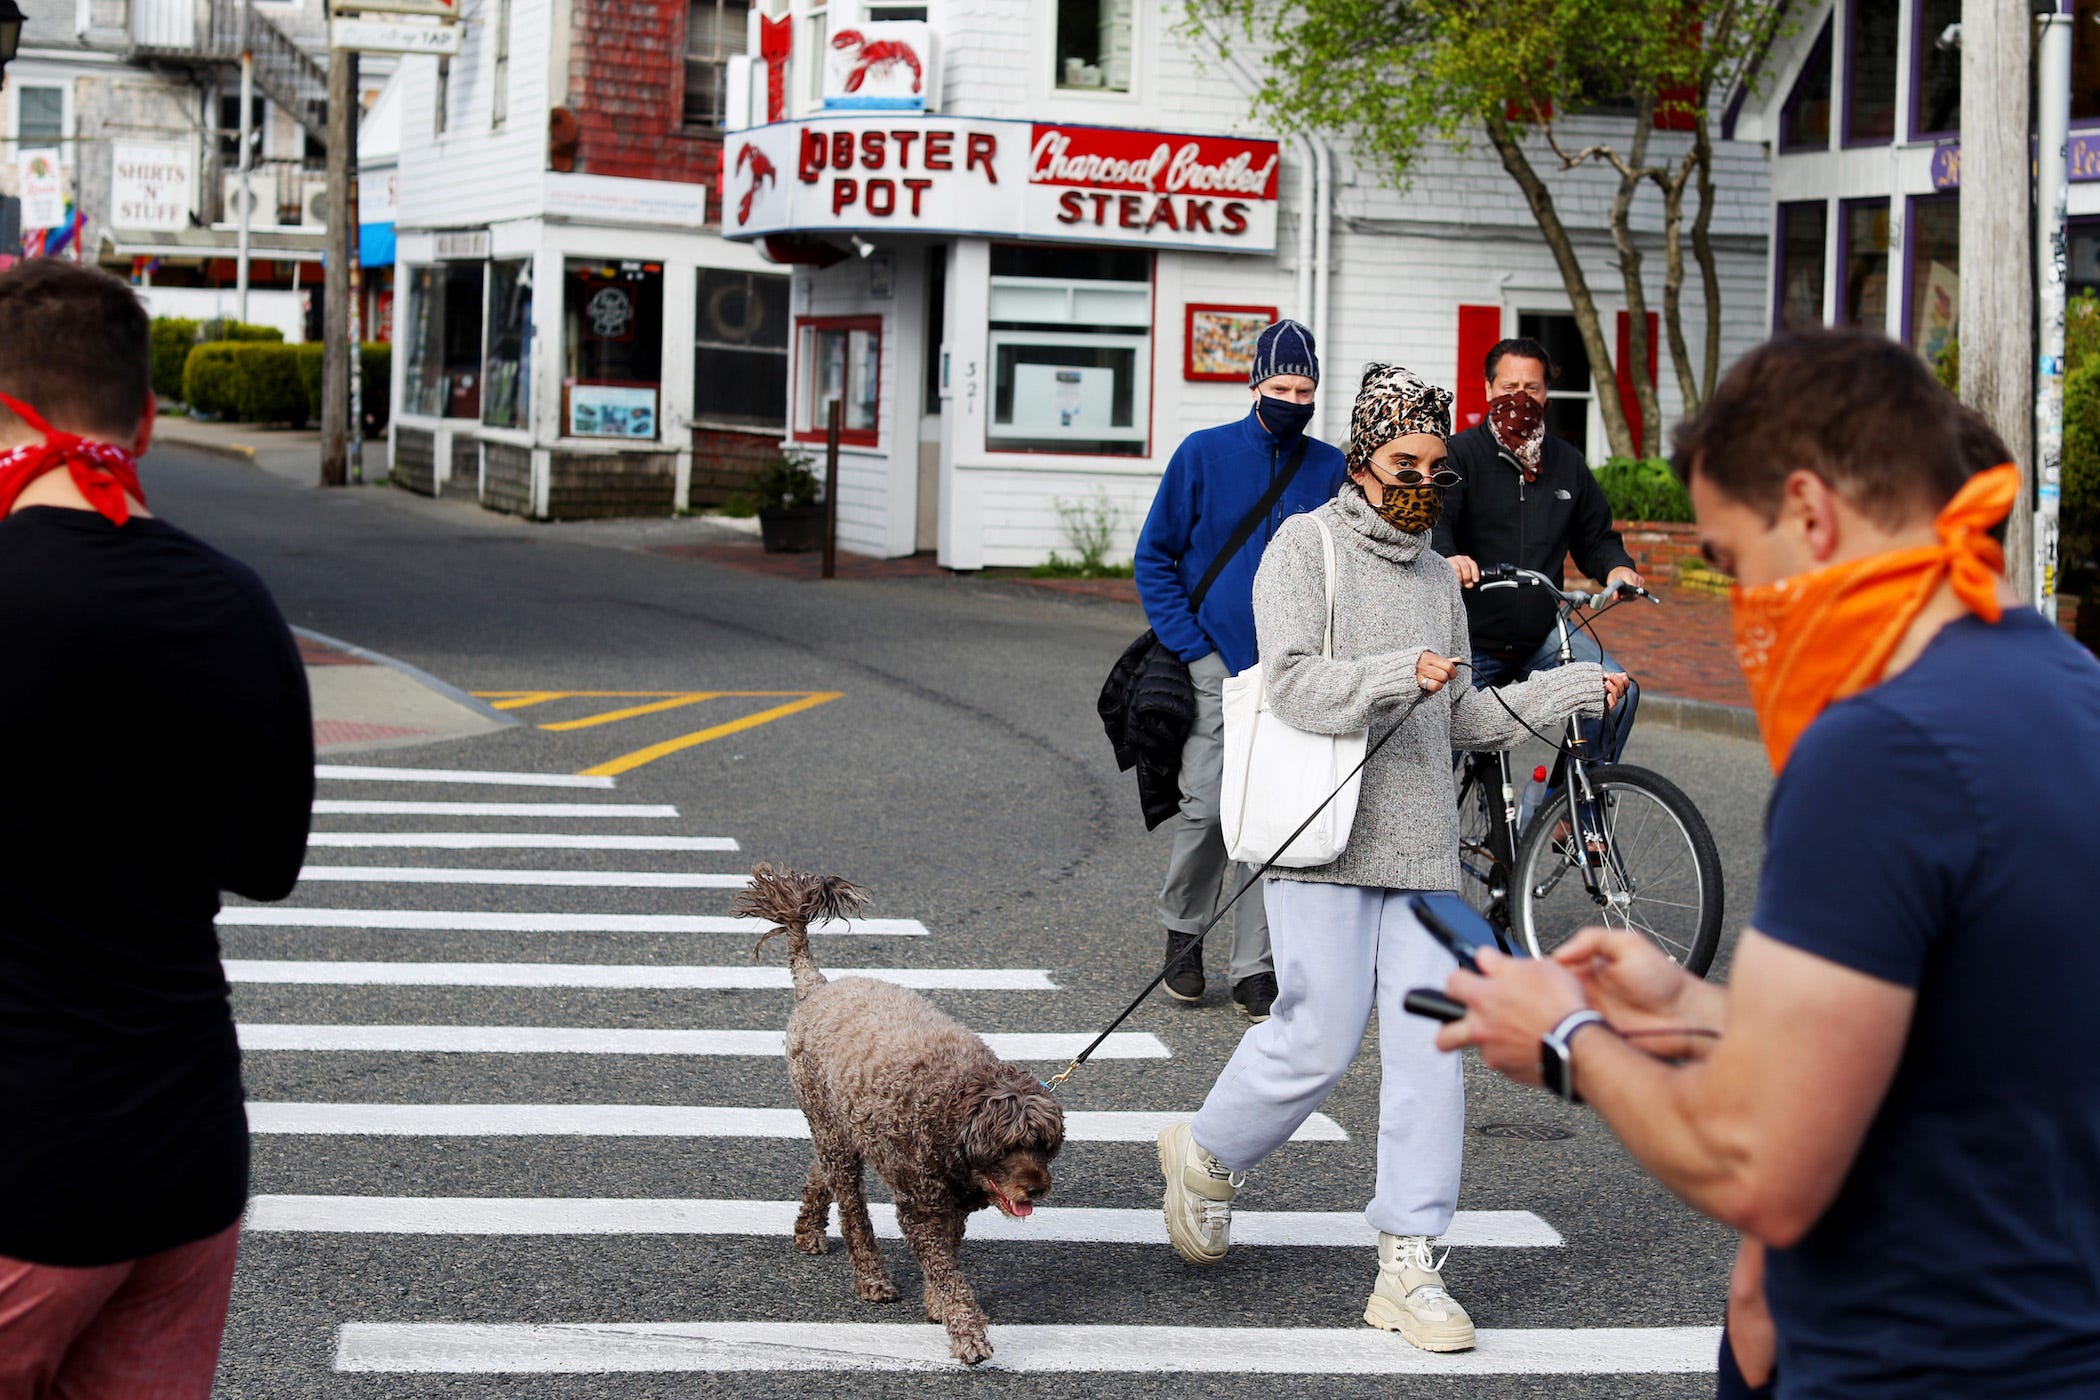 provincetown street with people walking, biking, dog walking, all wearing masks